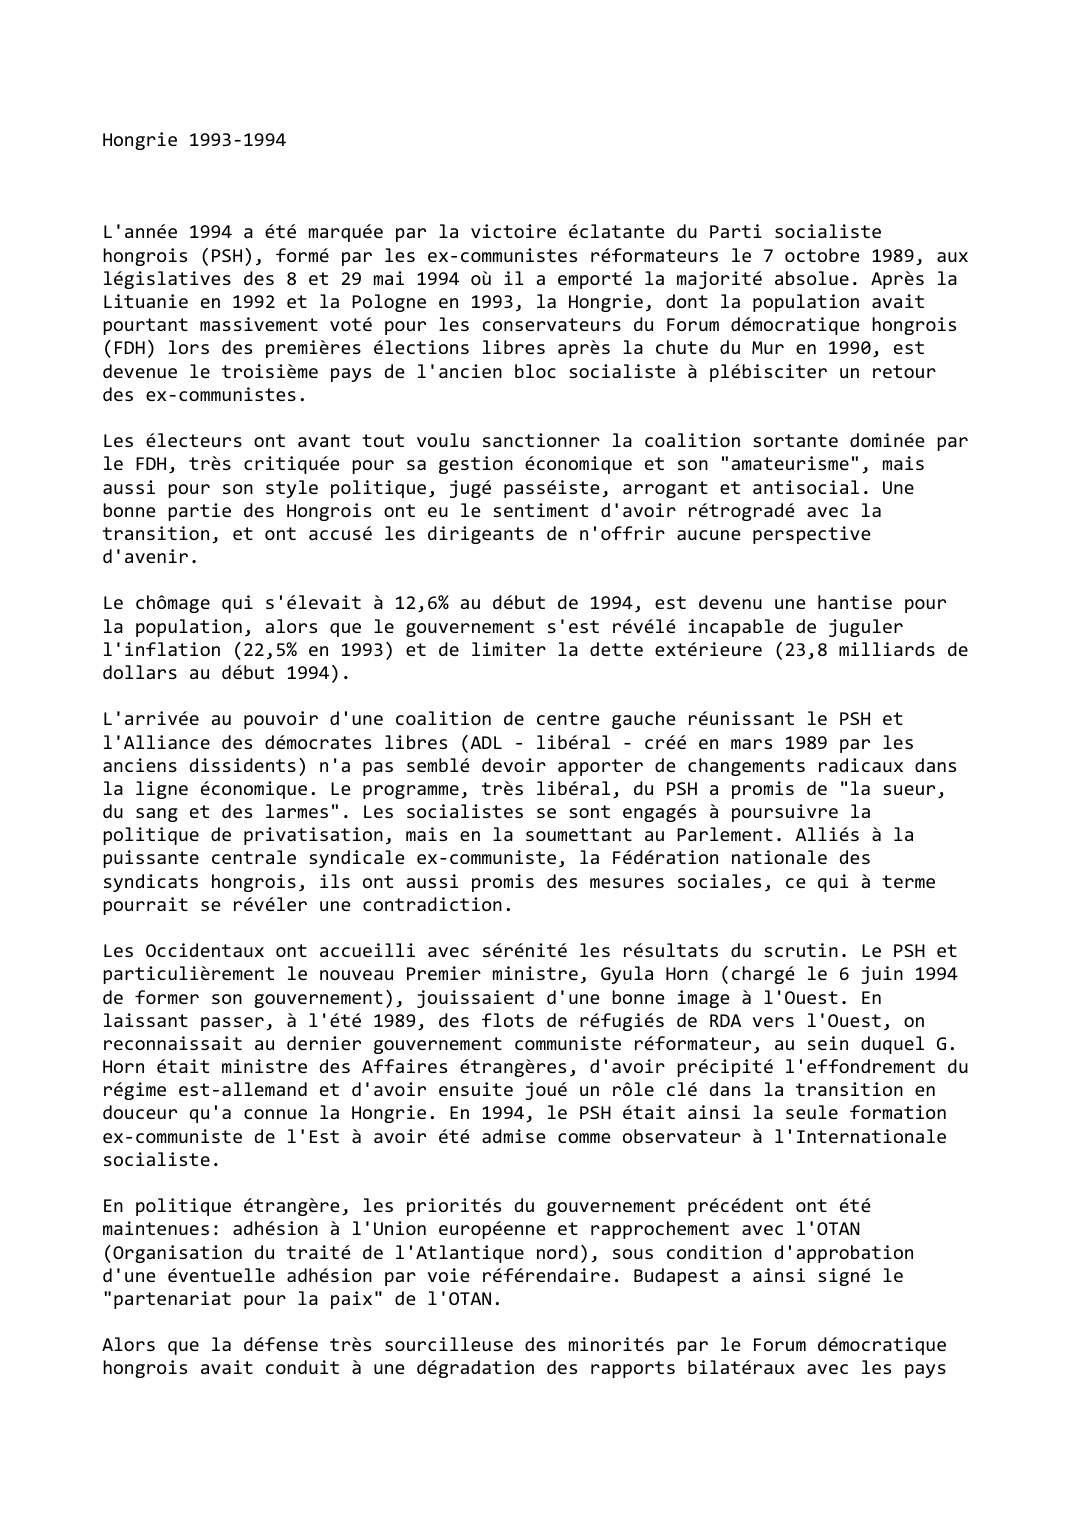 Prévisualisation du document Hongrie (1993-1994)